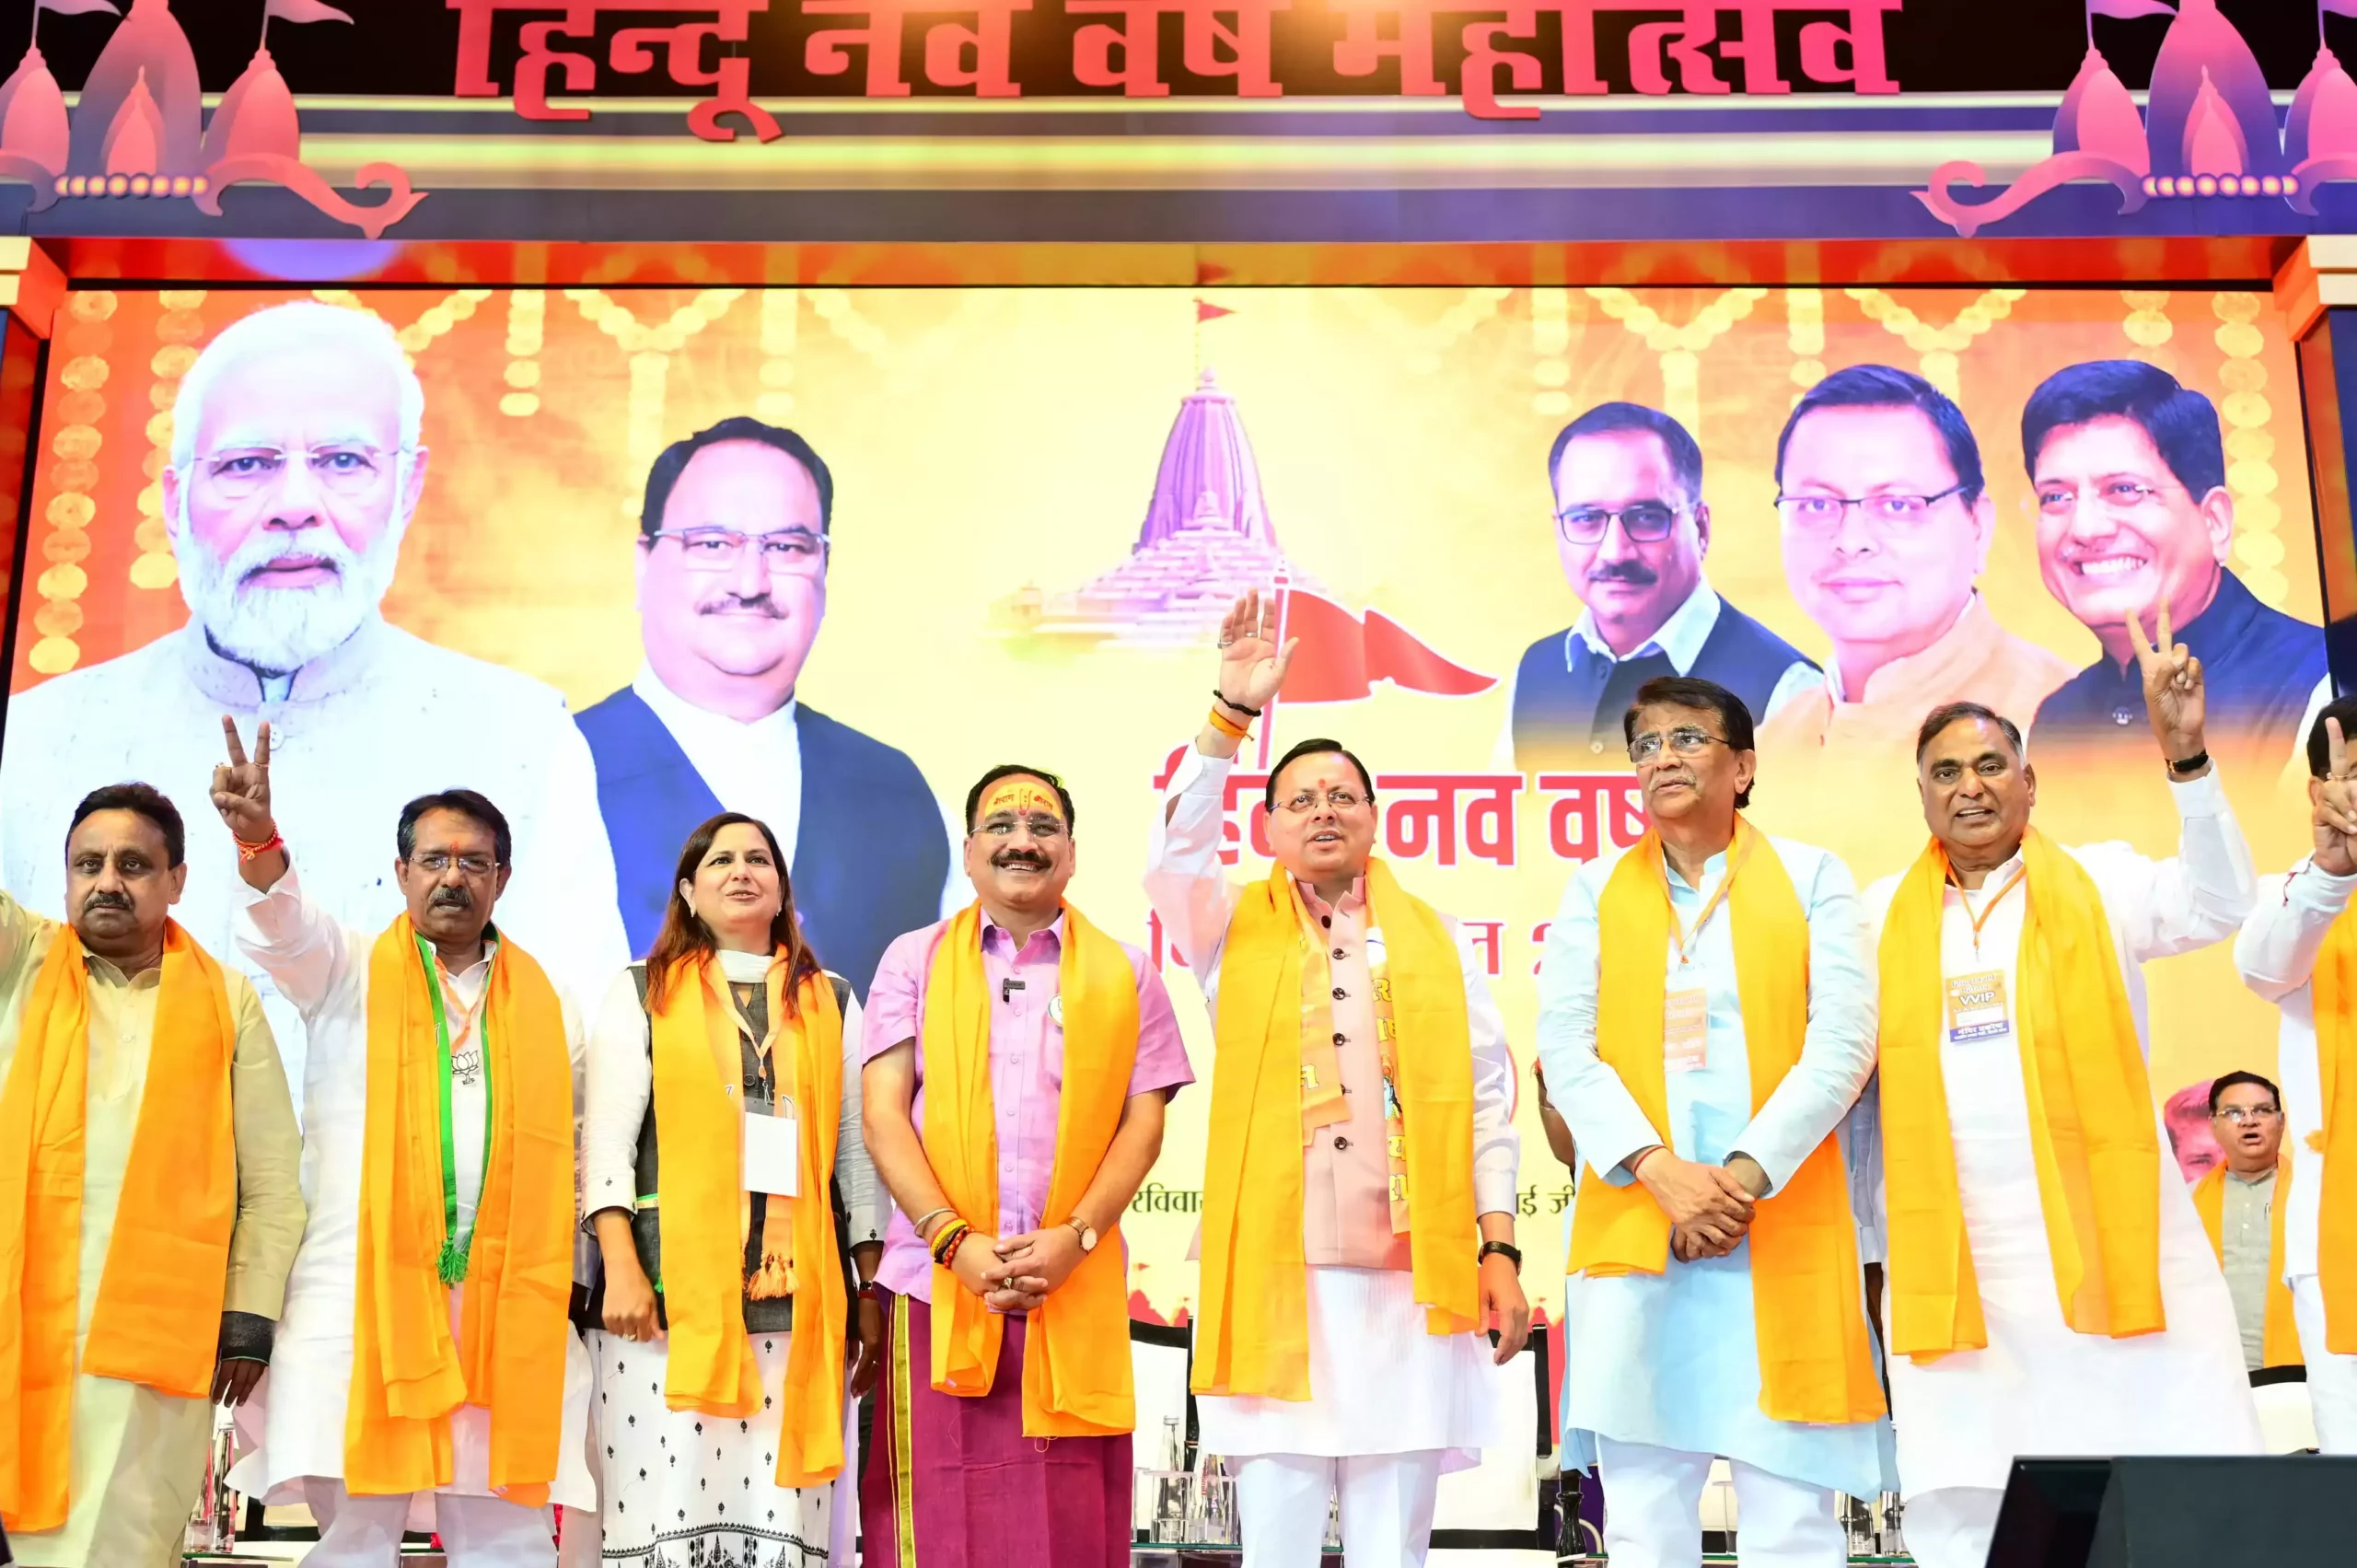  नई दिल्ली में मुख्यमंत्री धामी बोले- हिन्दू नववर्ष महोत्सव कई मायनों में है विशिष्ट